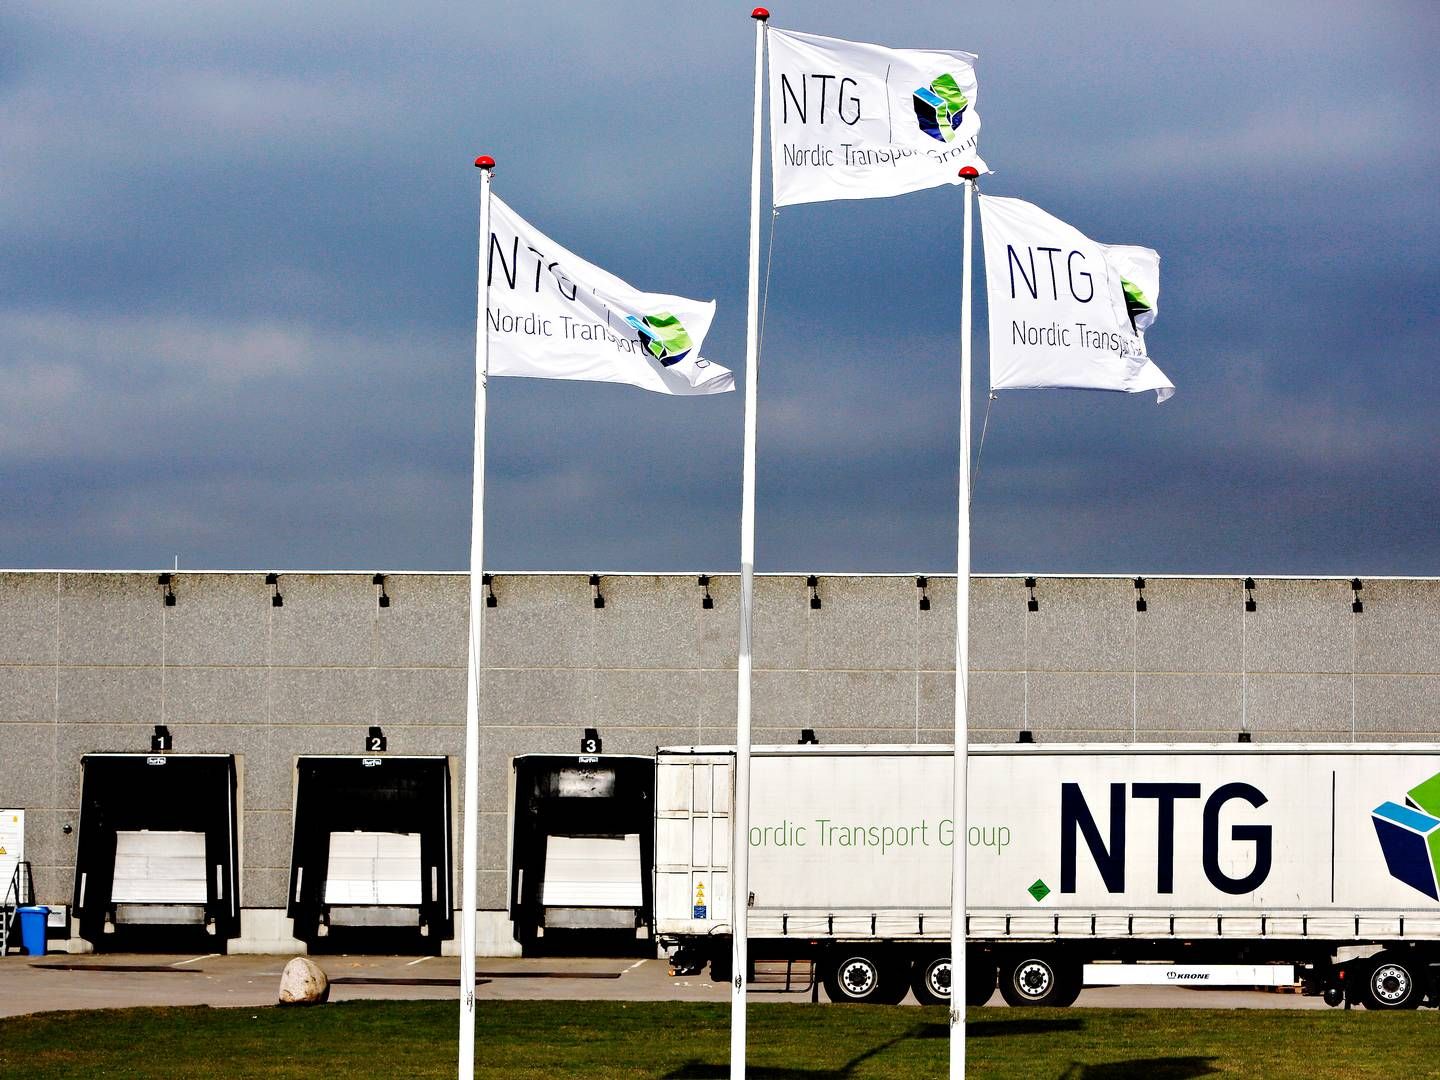 Transportkoncernen Nordic Transport Group (NTG) blev stiftet af Jørgen Hansen i 2011. | Foto: Pr / Ntg